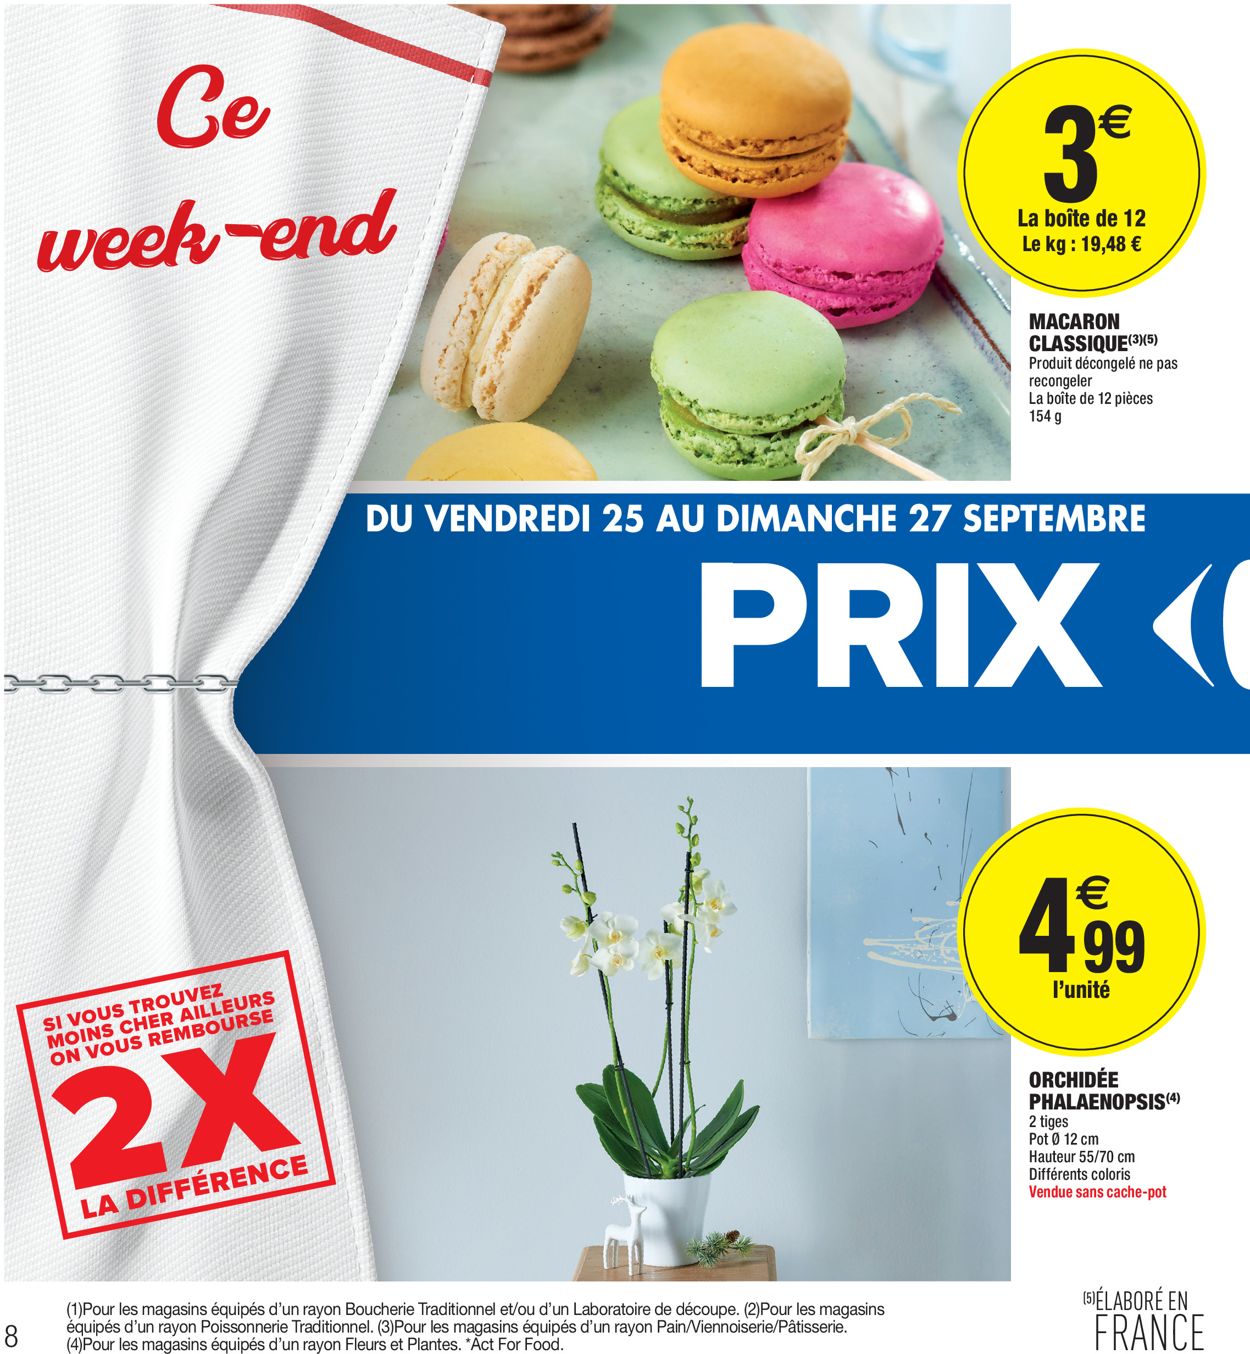 Carrefour Catalogue du 21.09.2020